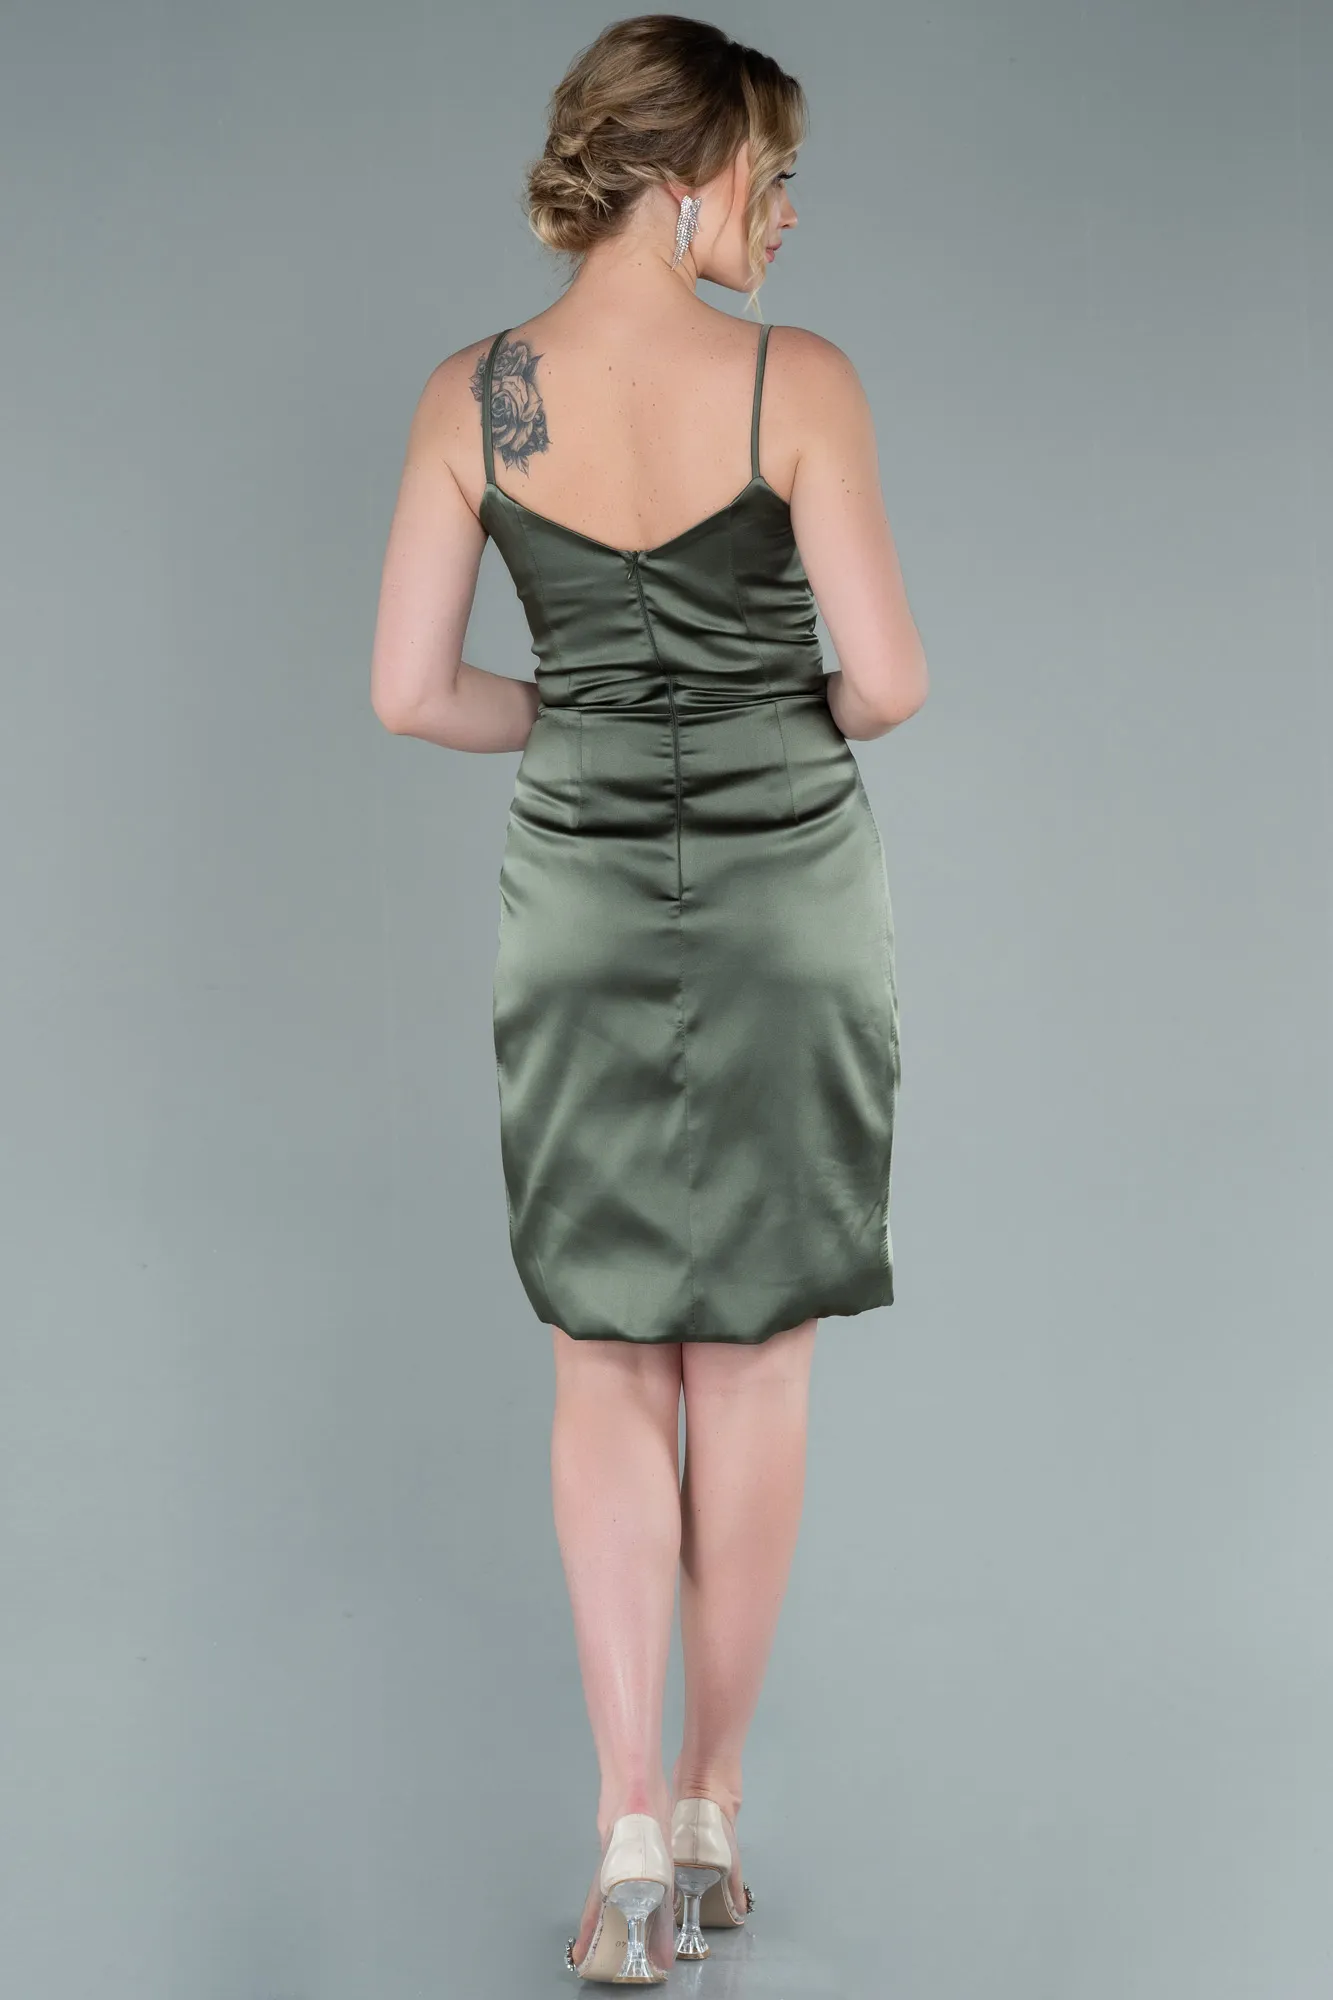 Olive Drab-Short Satin Invitation Dress ABK1081